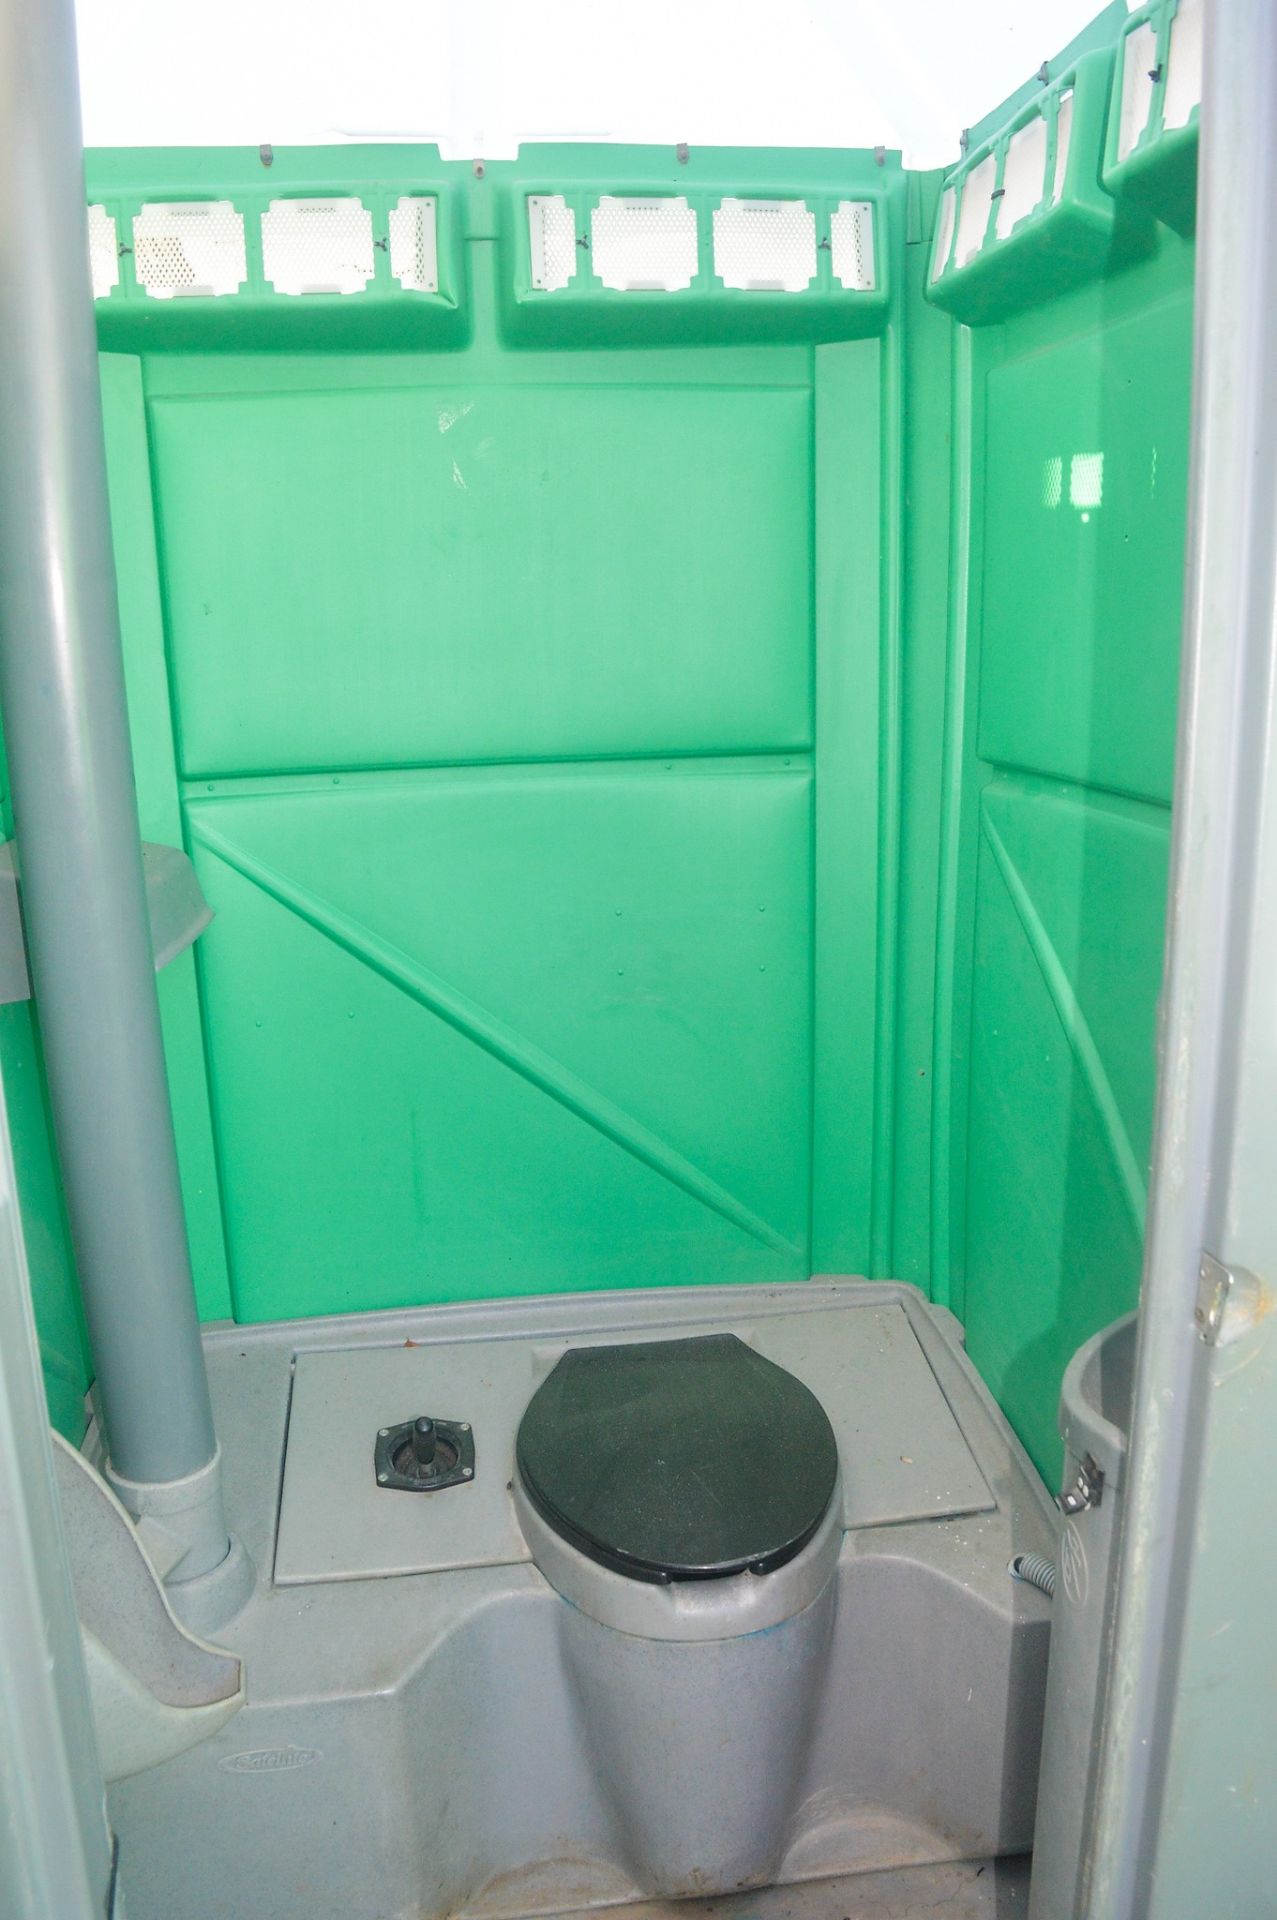 Plastic portable toilet unit A439107 - Image 2 of 2